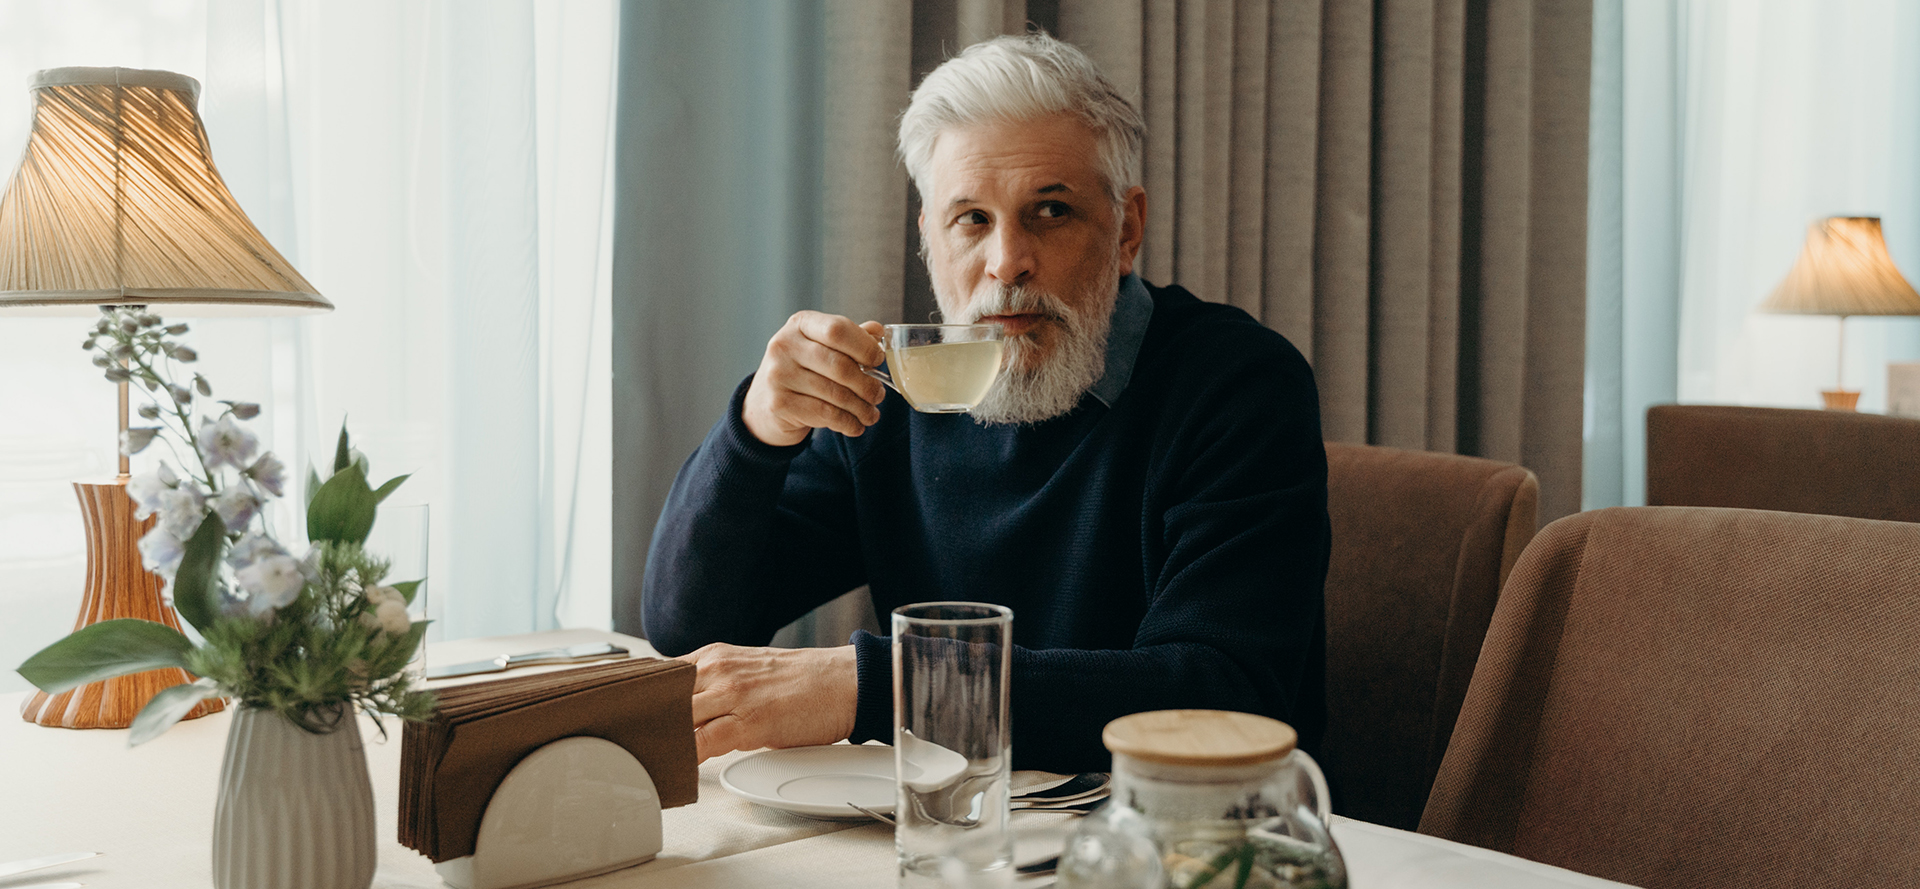 Un uomo anziano e solo sta bevendo del tè.